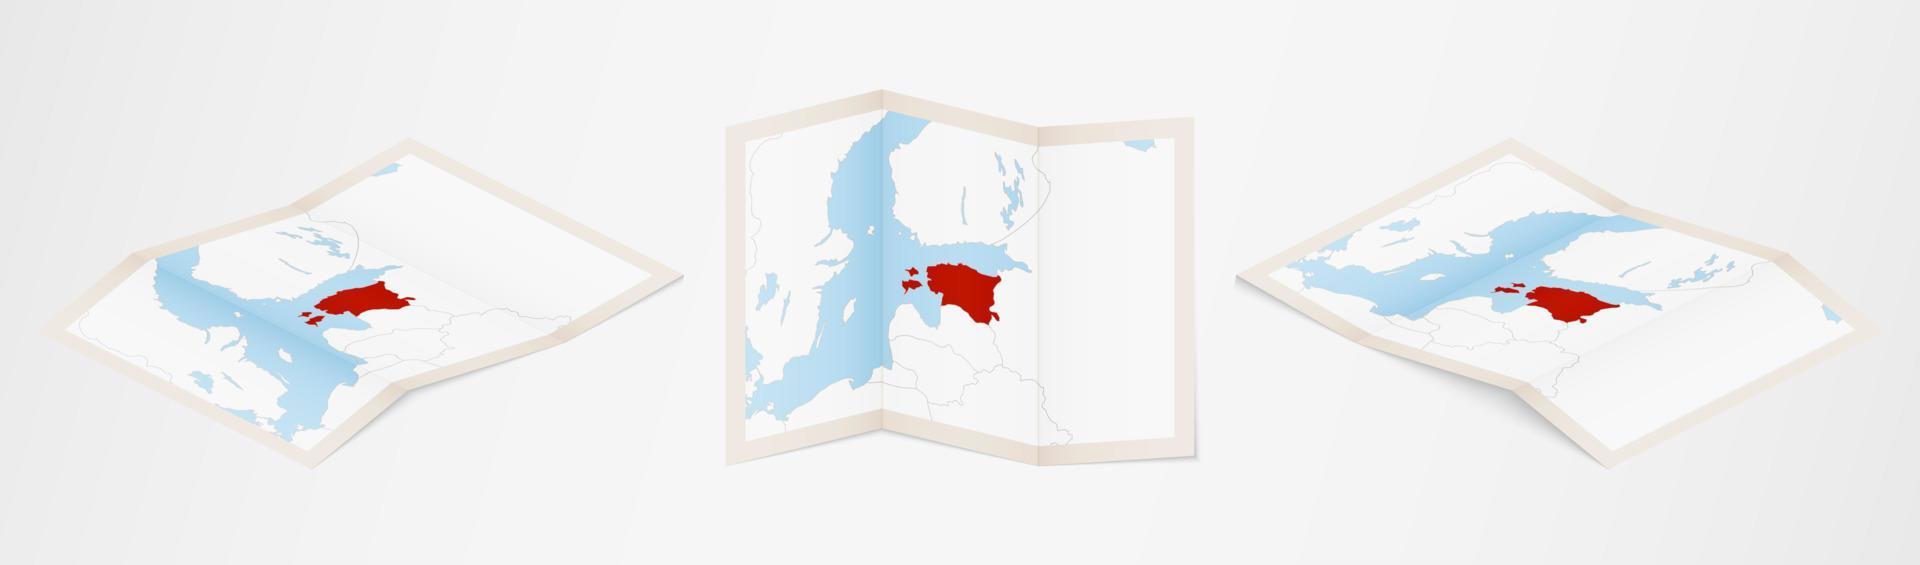 carte pliée de l'estonie en trois versions différentes. vecteur